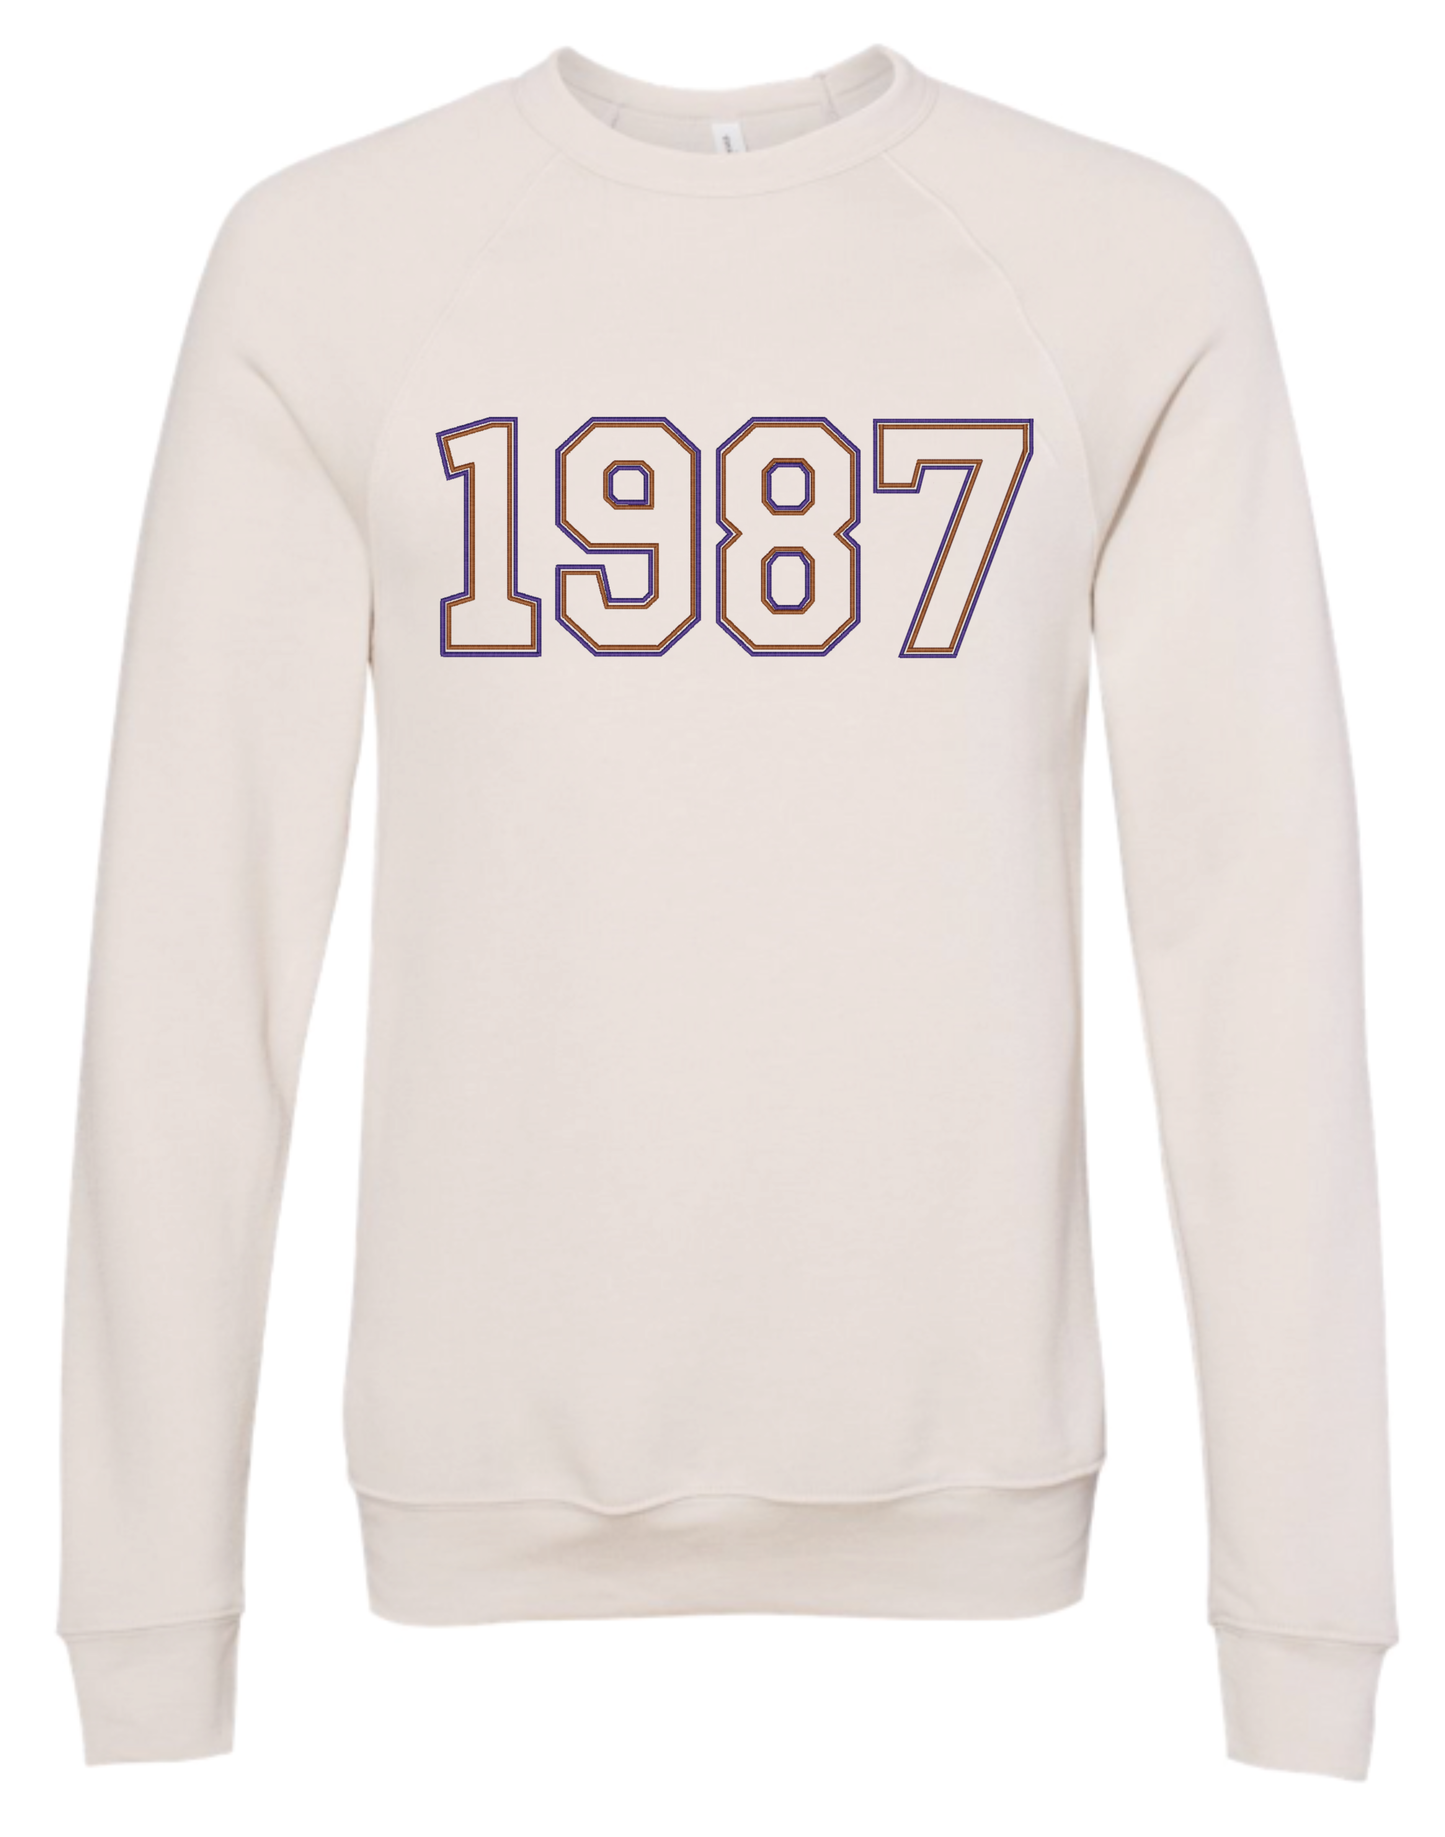 1987 Embroidered Sweatshirt